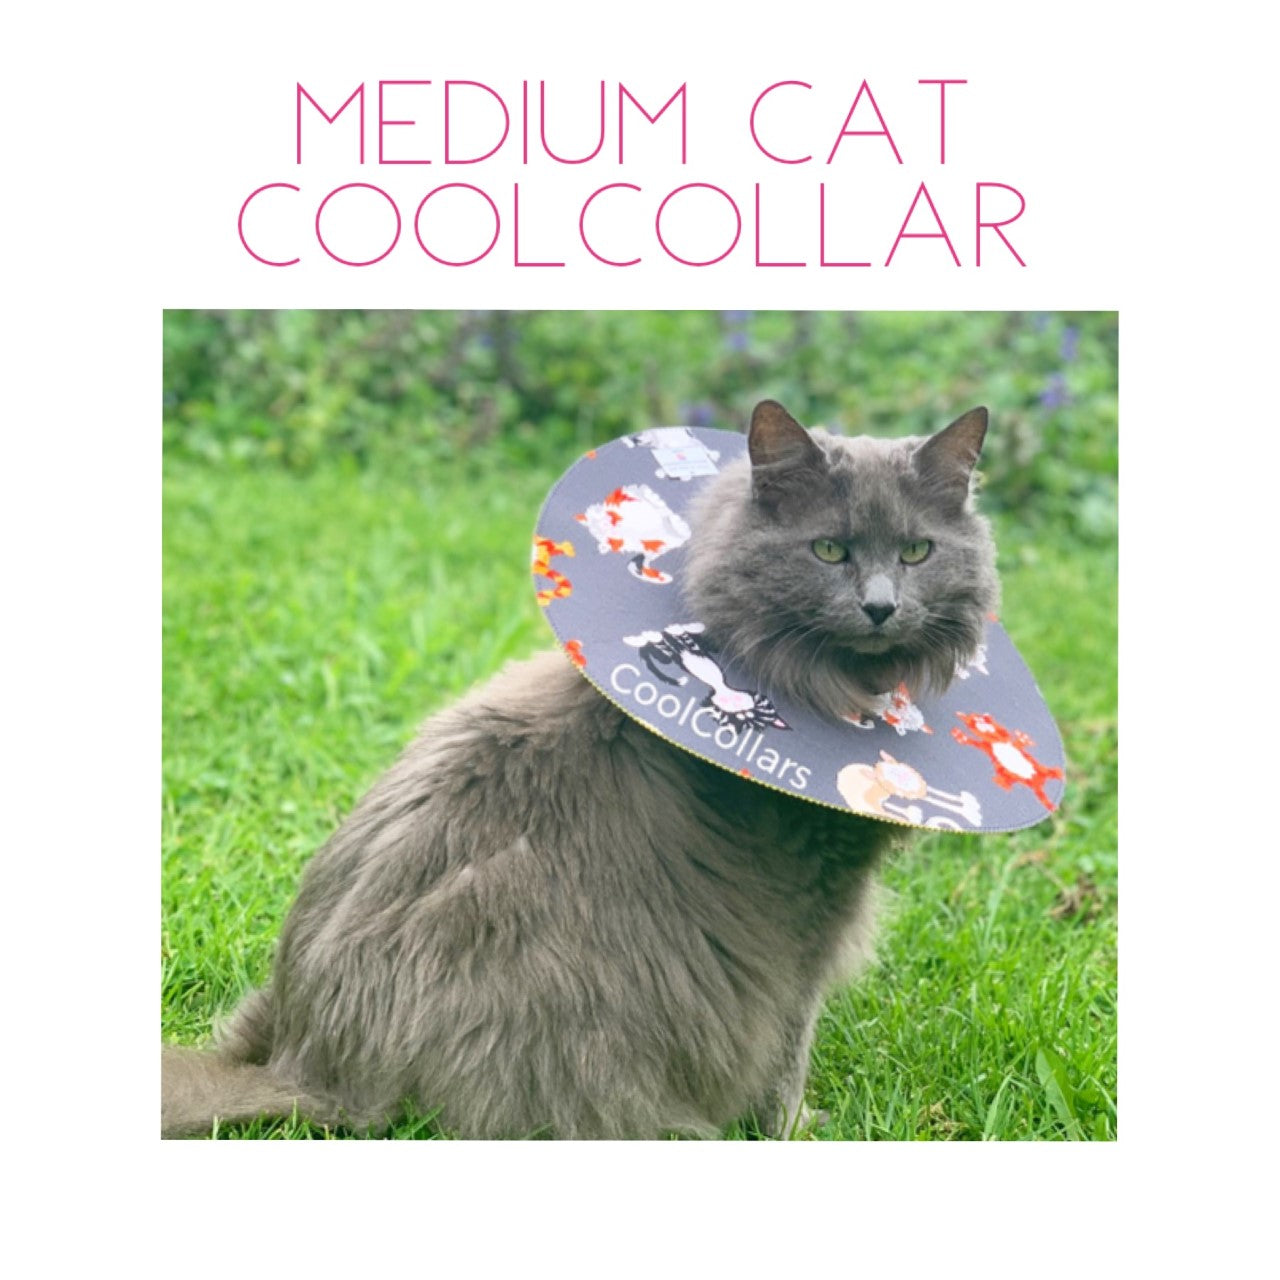 Medium Cat